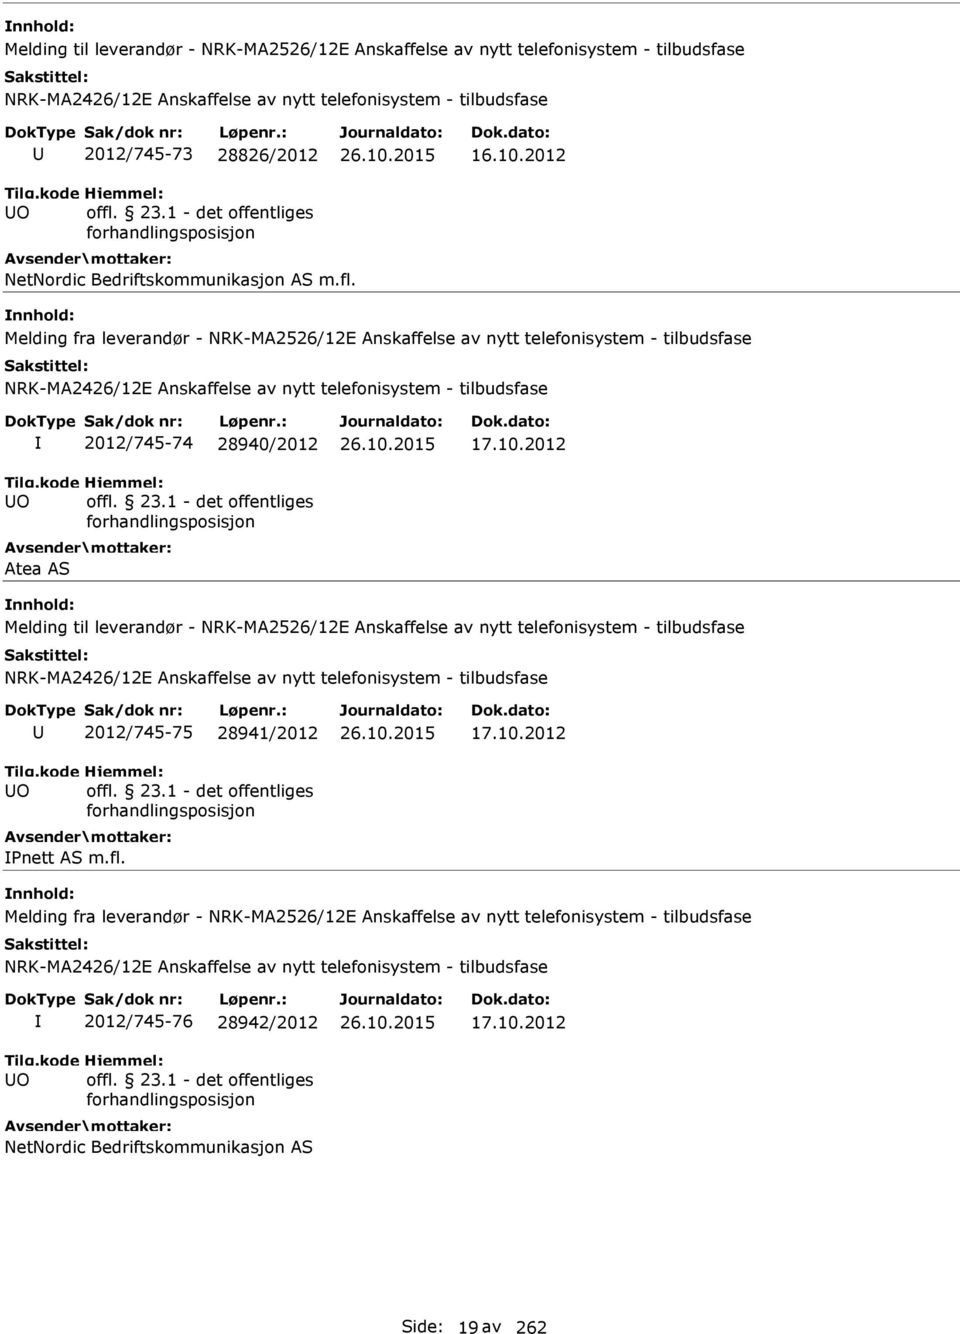 Melding fra leverandør - NRK-MA2526/12E Anskaffelse av nytt telefonisystem - tilbudsfase O 2012/745-74 28940/2012 Atea AS 17.10.